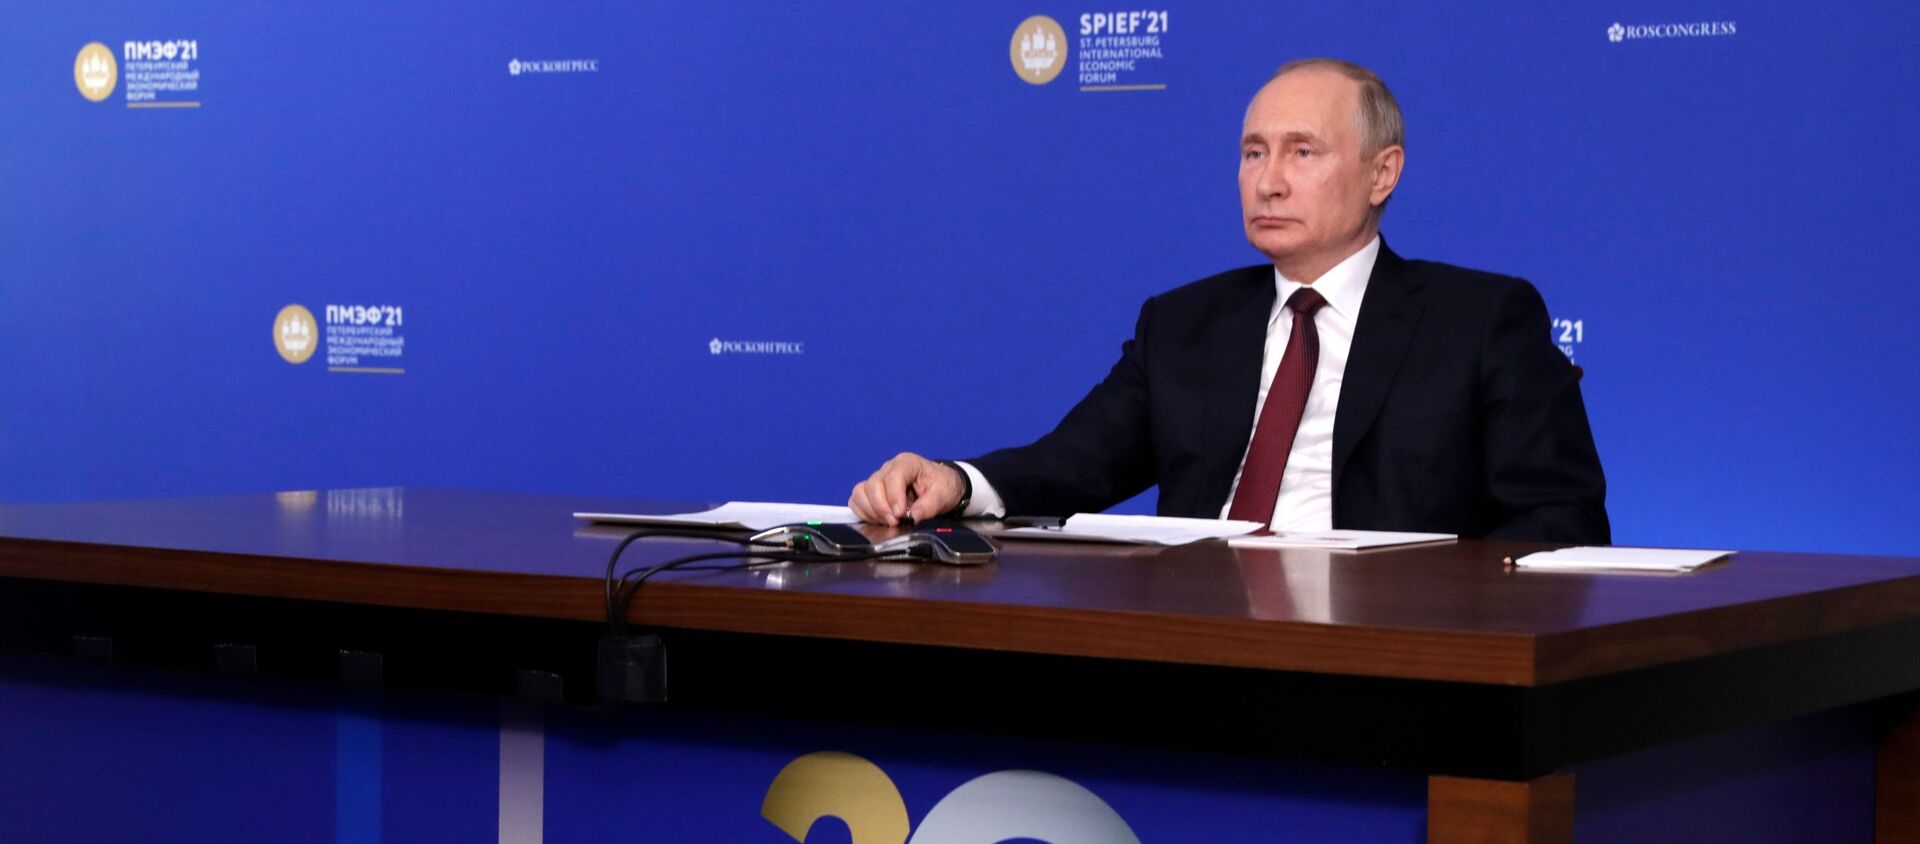 Tổng thống Nga Vladimir Putin tại Diễn đàn Kinh tế Quốc tế St. Petersburg - 2021. - Sputnik Việt Nam, 1920, 05.06.2021